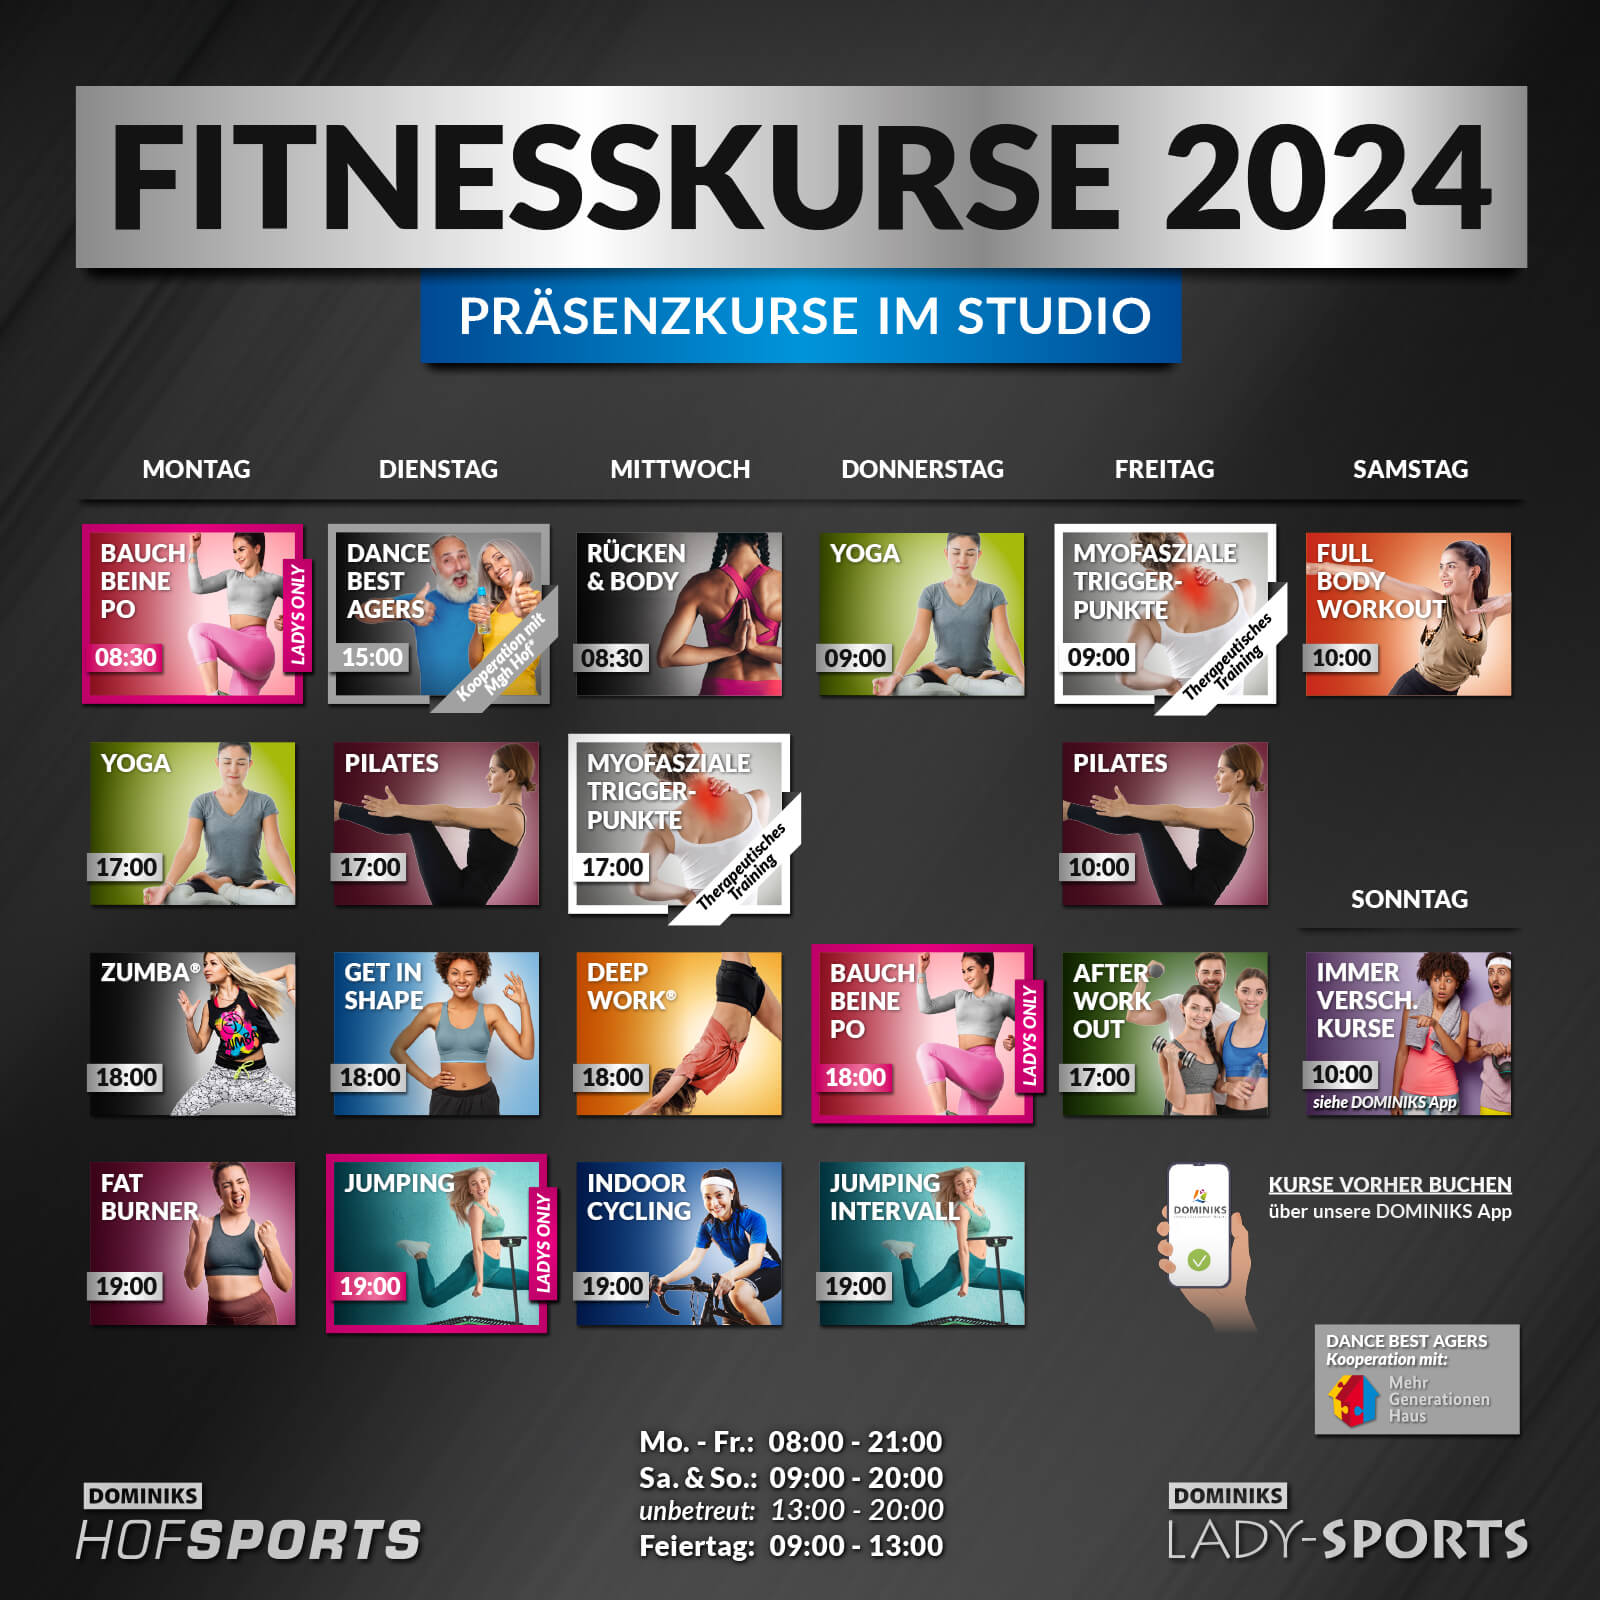 KURSPLAN Fitnesskurse HofSports Lady-Sports 2024